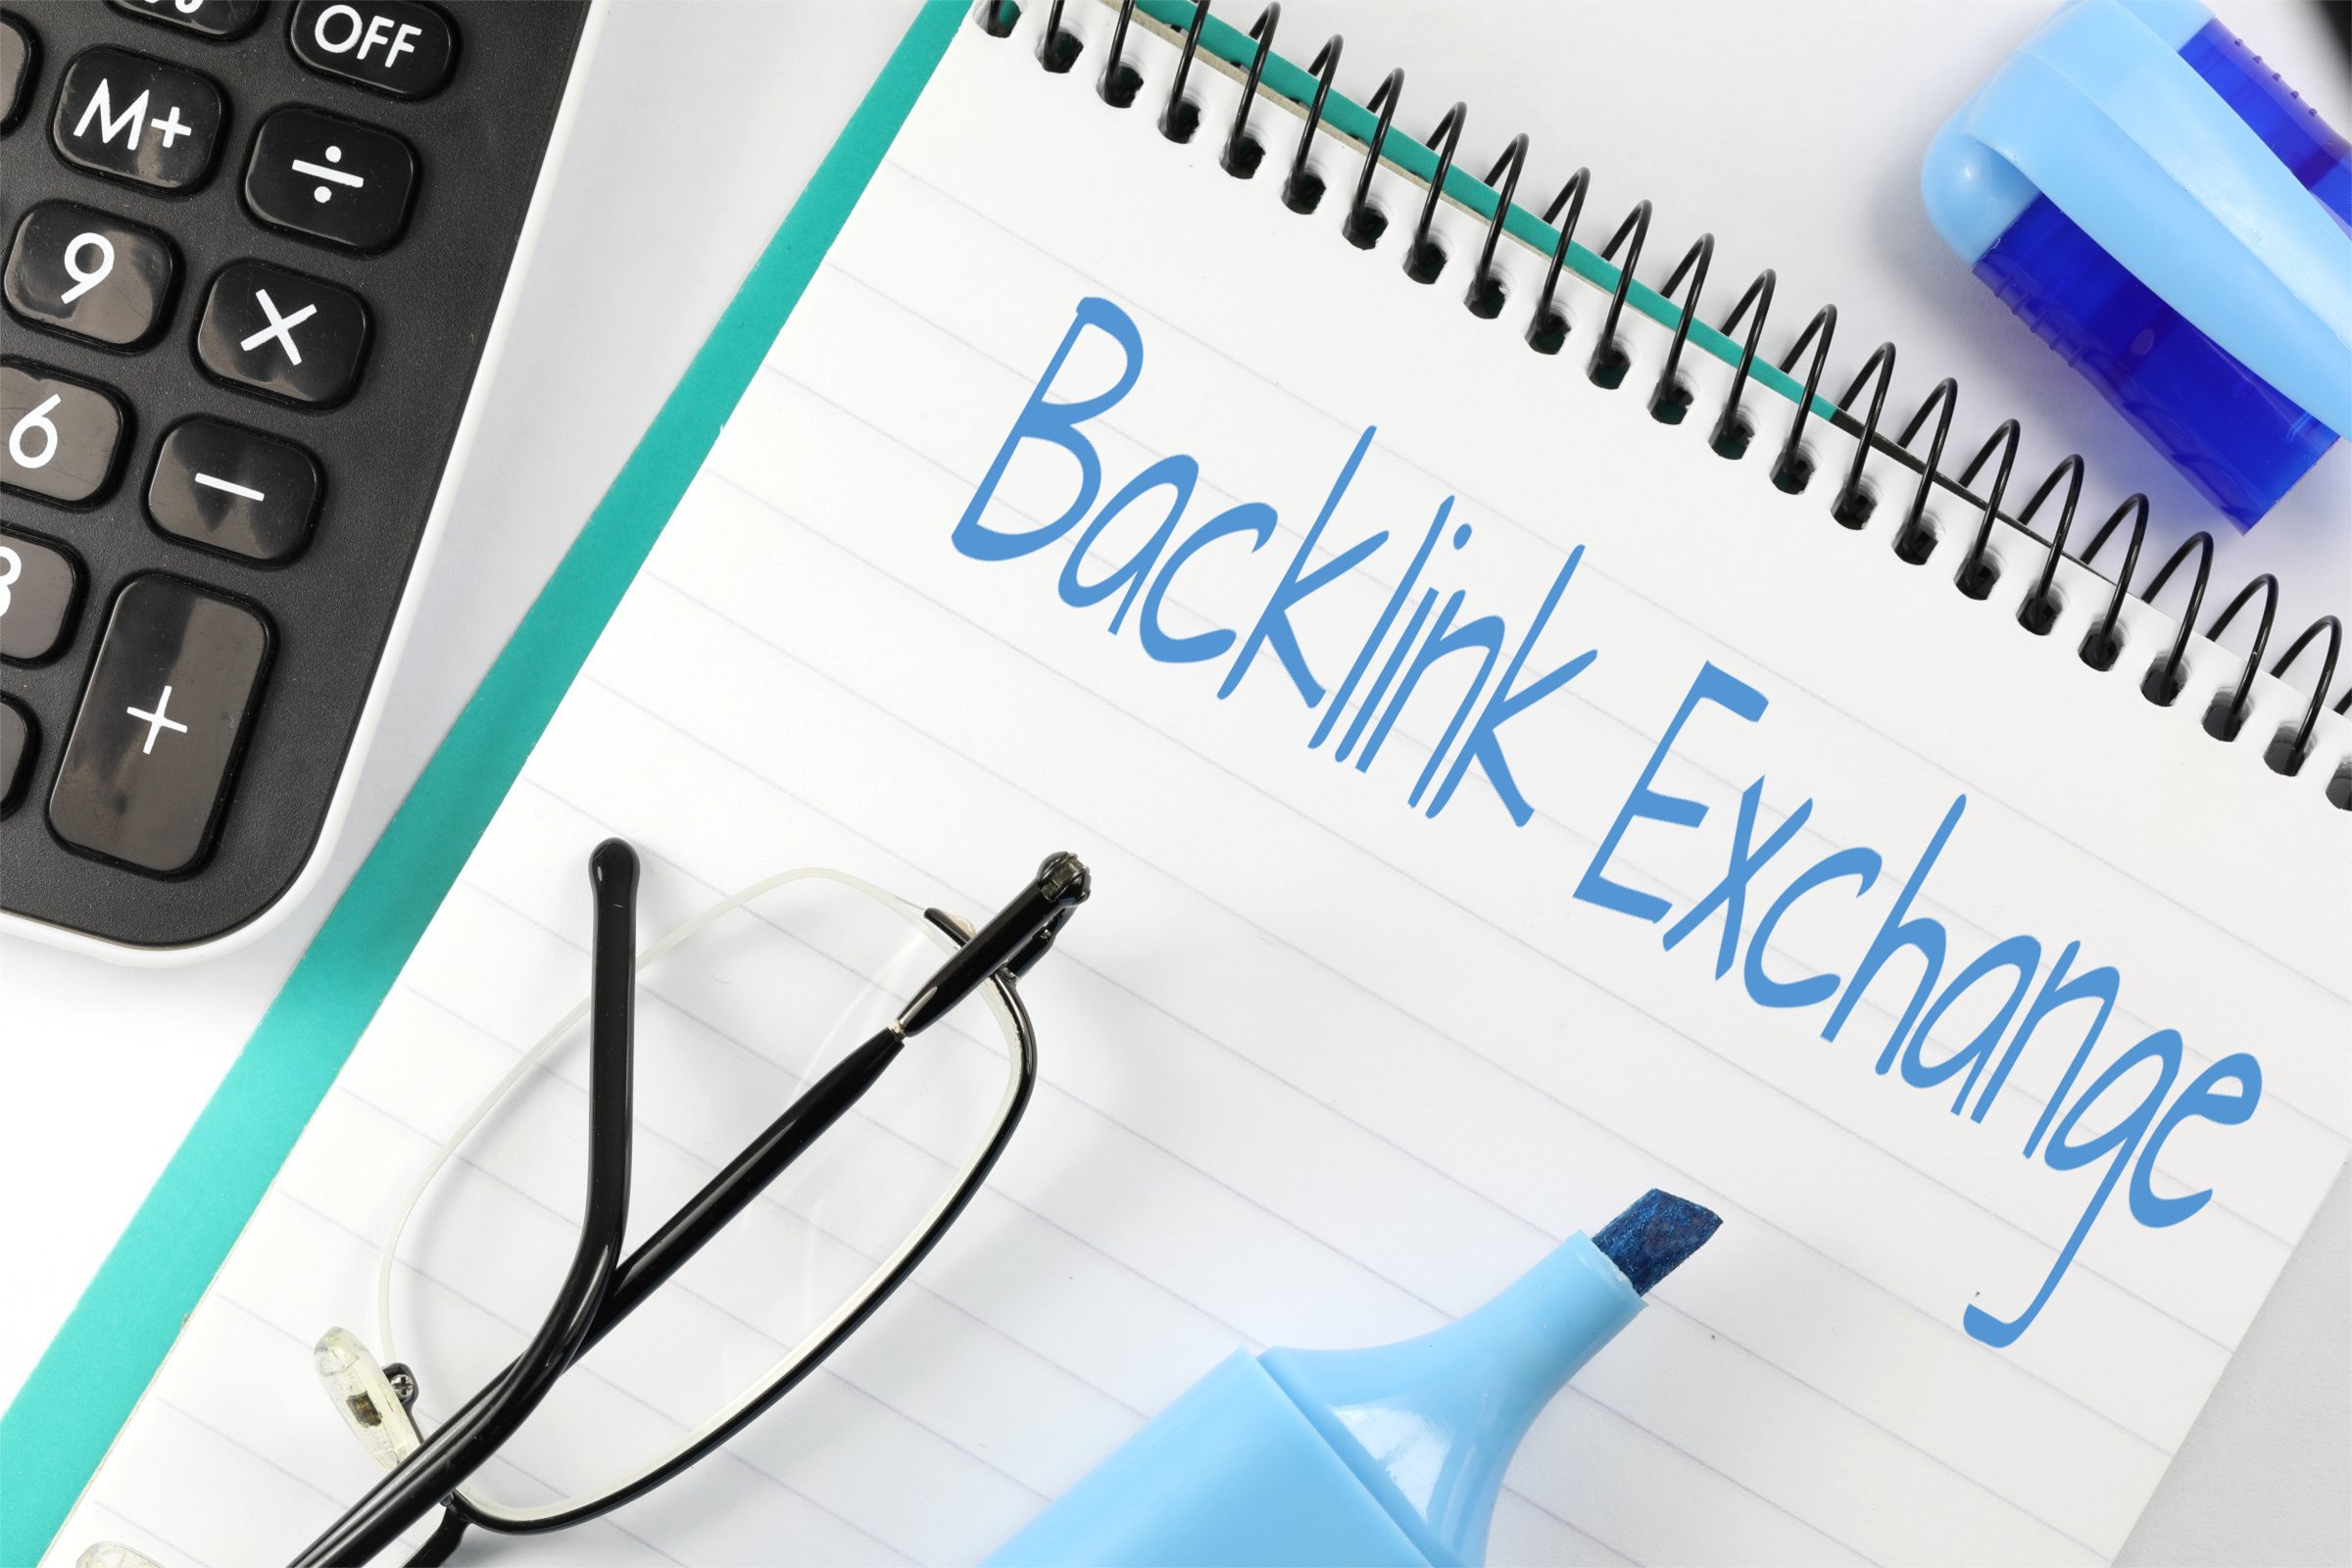 backlink_exchange.jpg